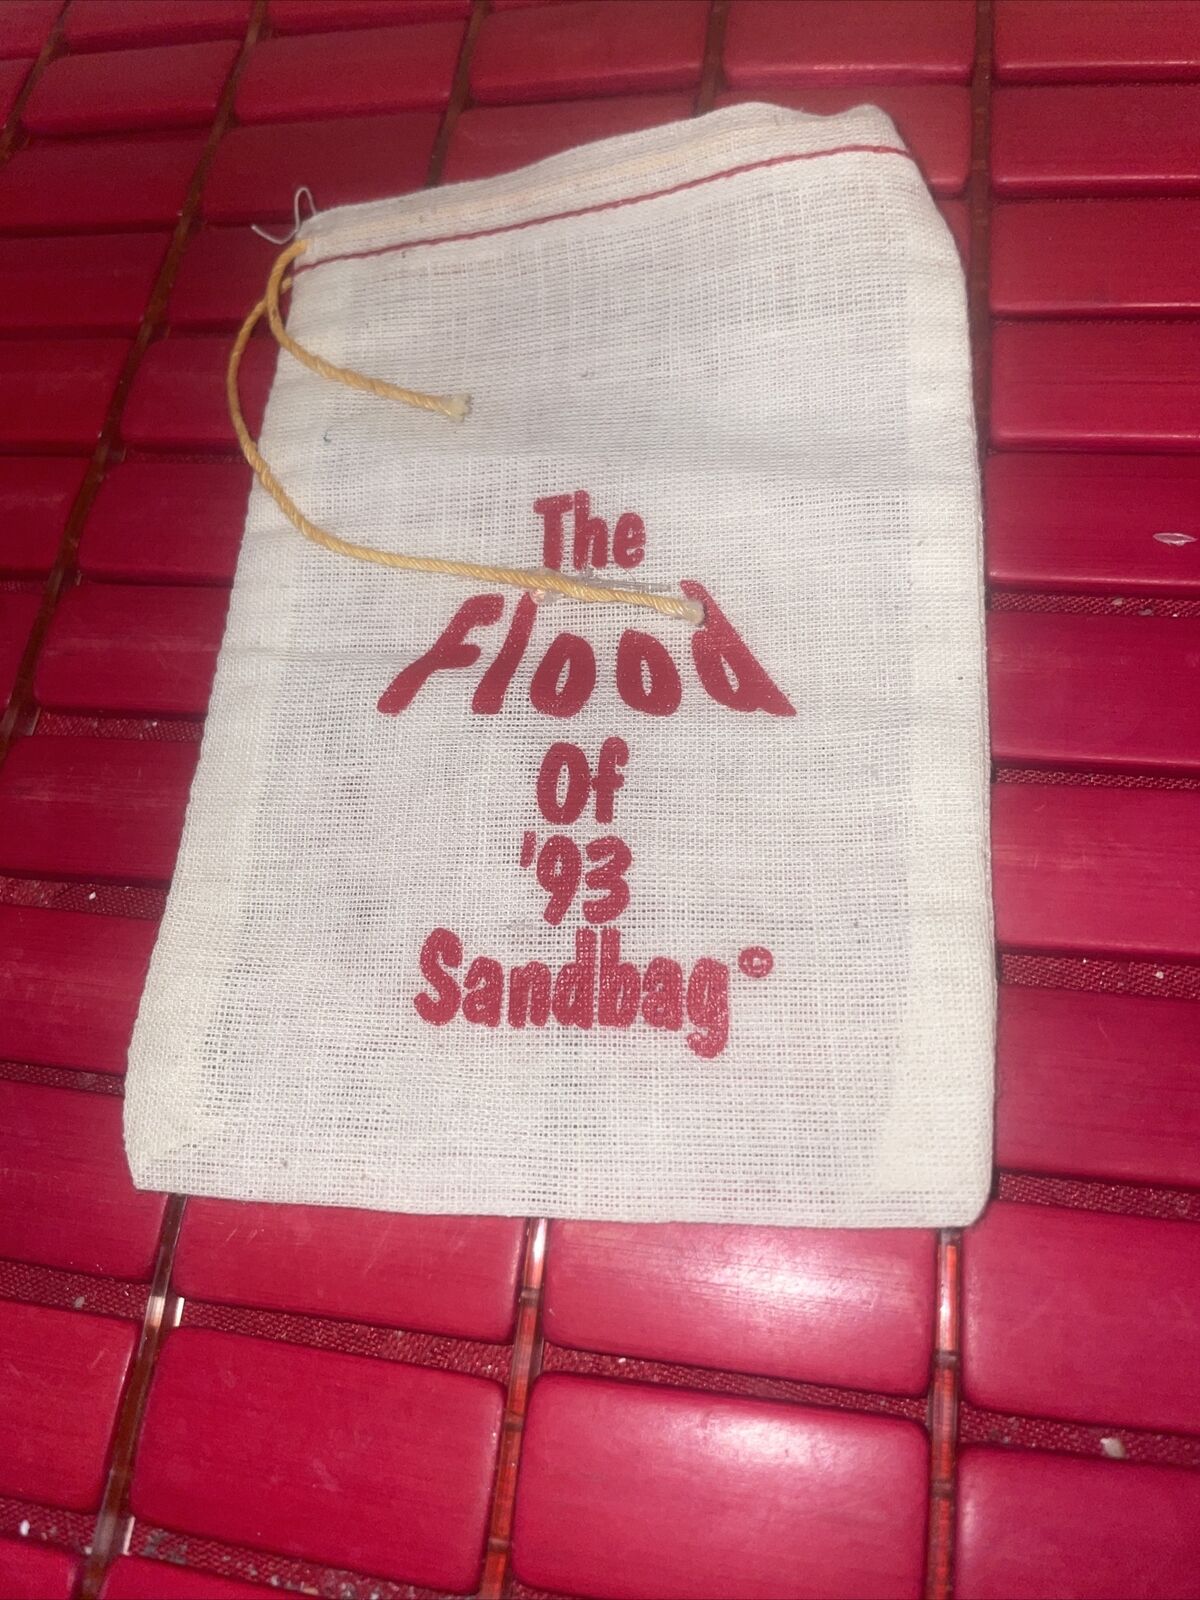 Vintage Flood Of 1993 Sandbag Souvenir. Estate Find